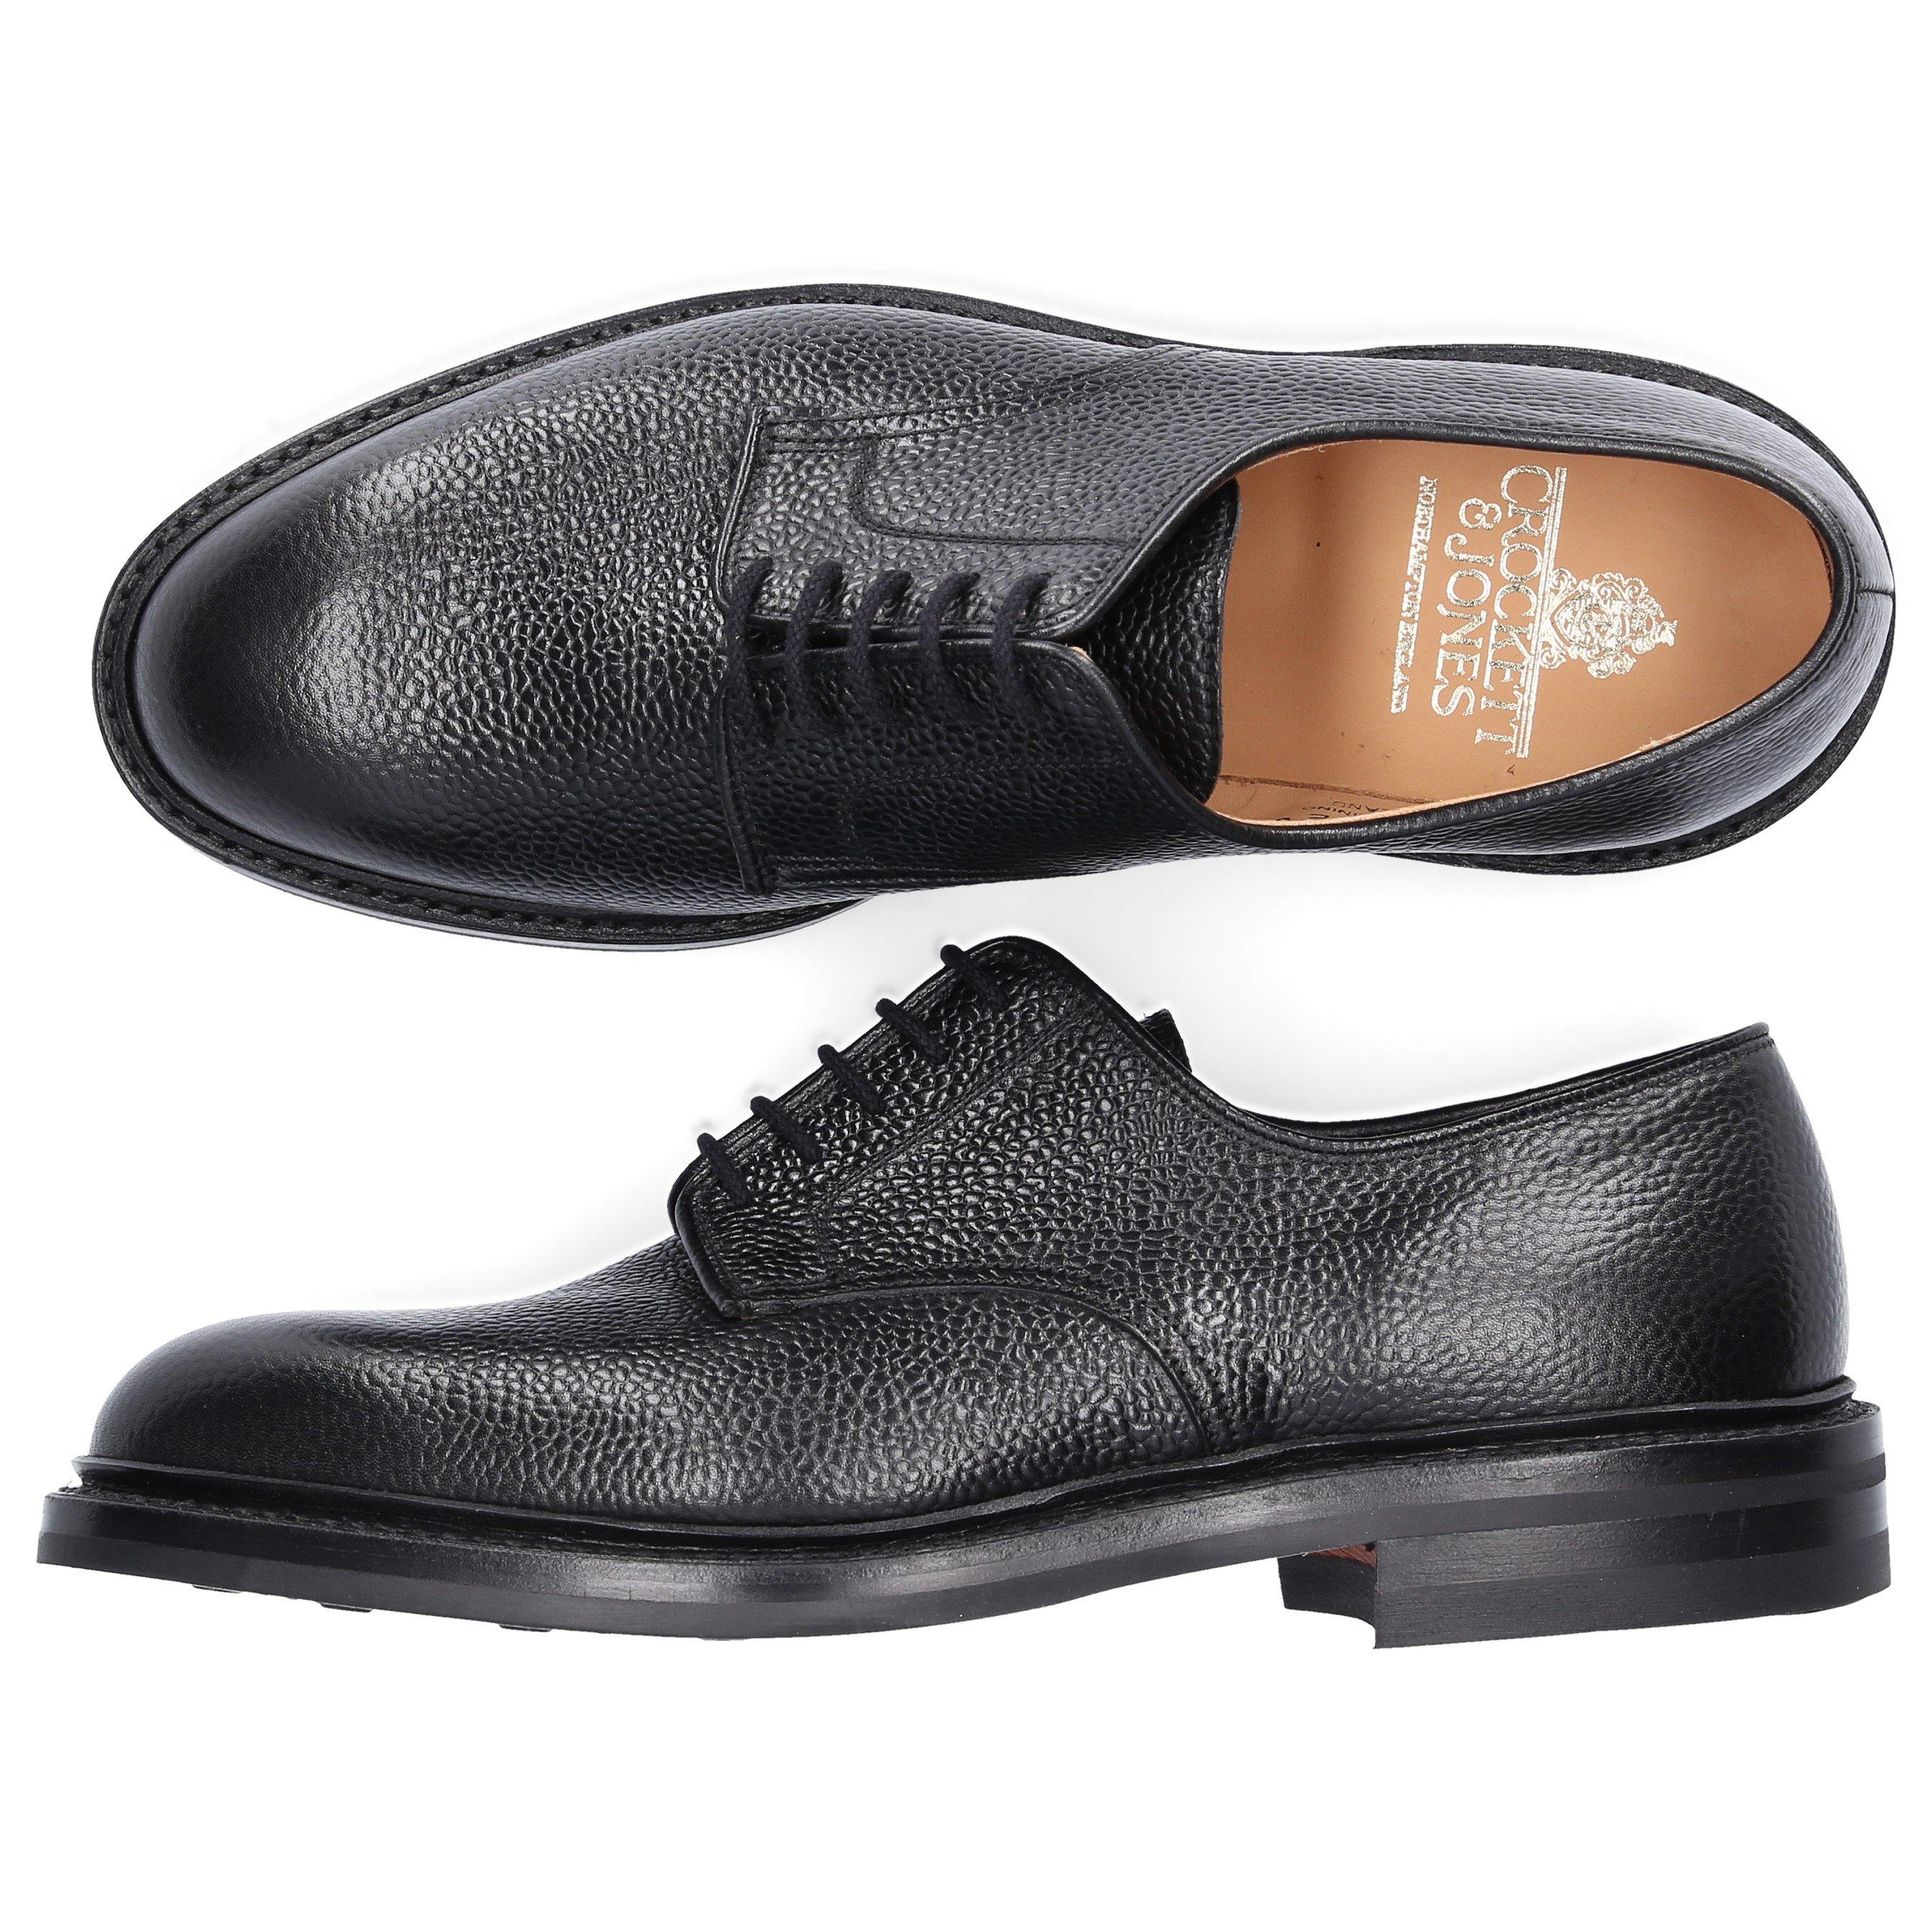 Crockett & Jones Brogue Barrington Leather Brown for Men Mens Shoes Lace-ups Derby shoes 